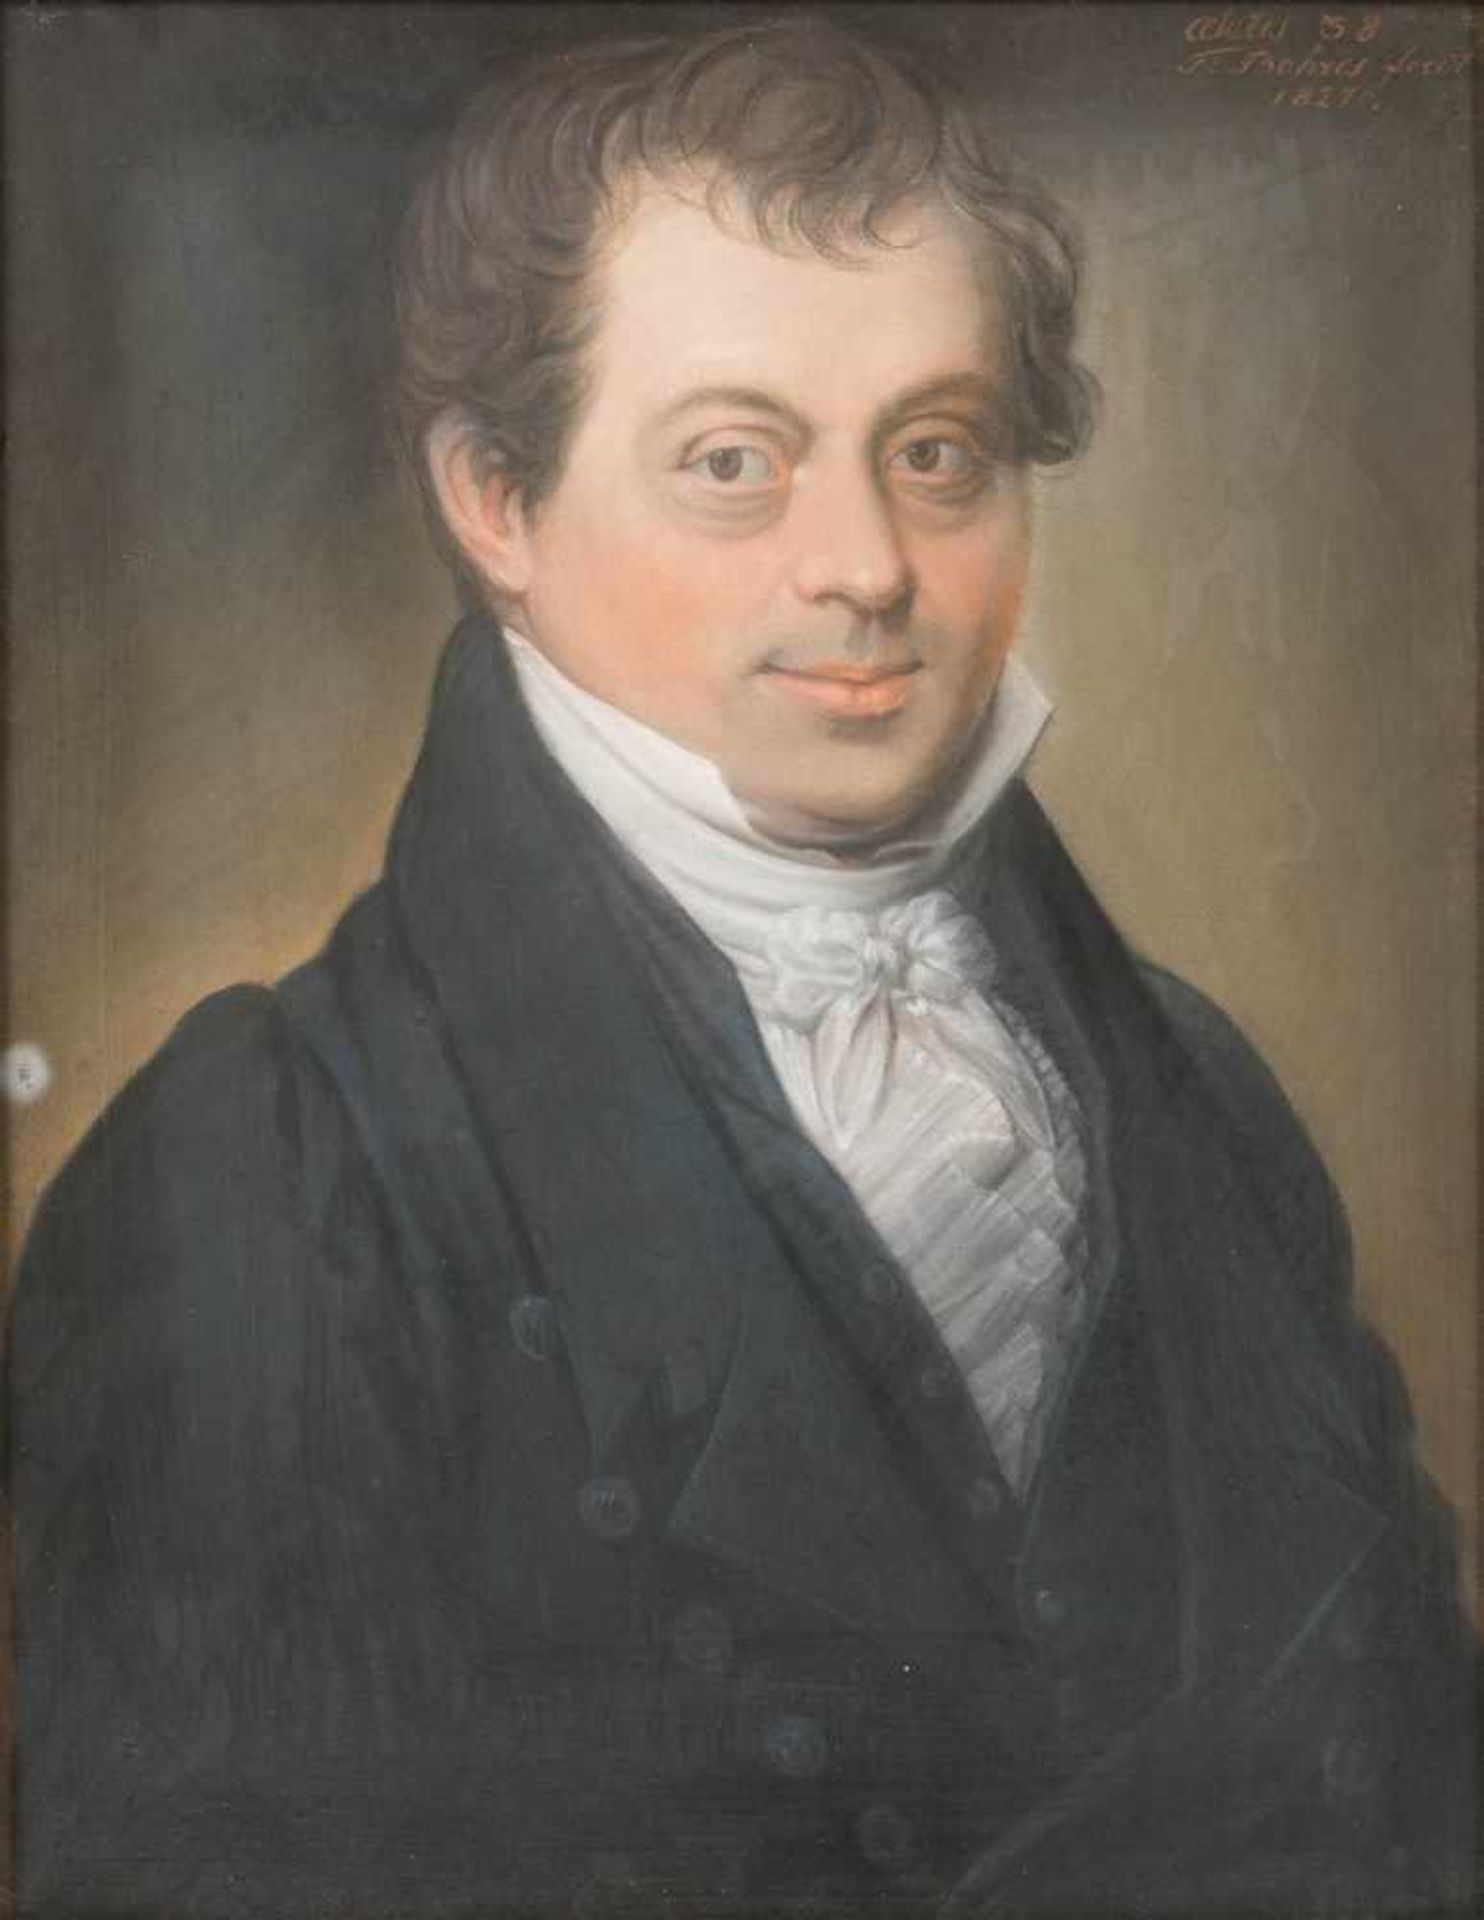 Bohres, Theodorus (Deutsch, nachweisbar bis 1833, Groningen)